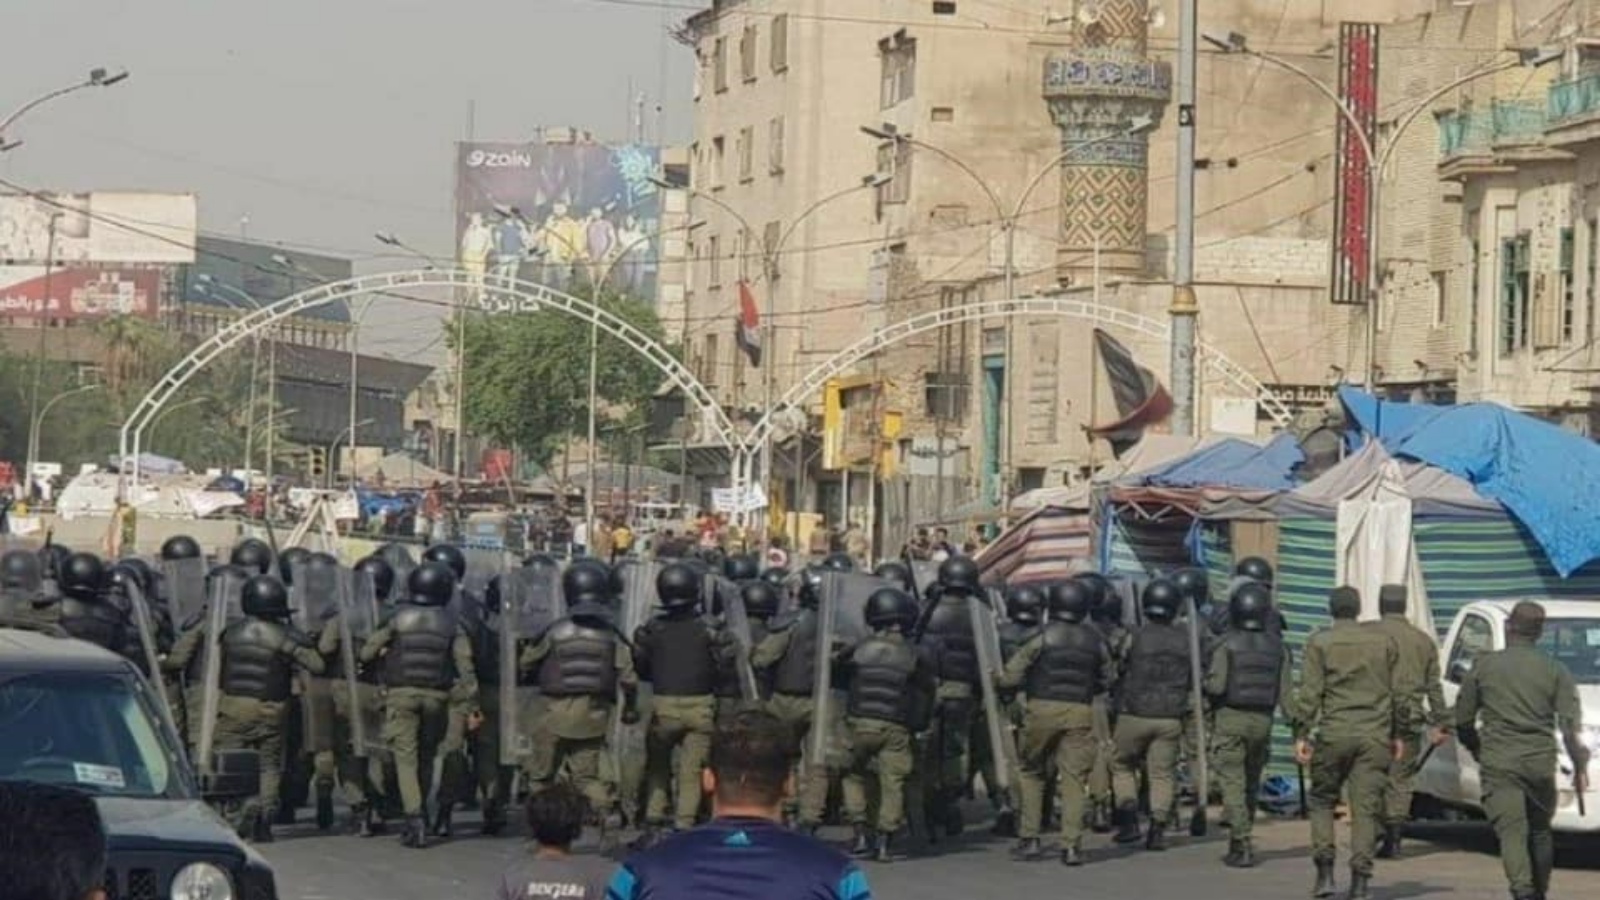 قوات حفظ النظام لدى دخولها الى ساحة التحرير وسط بغداد اليوم الصورة من فيسبوك